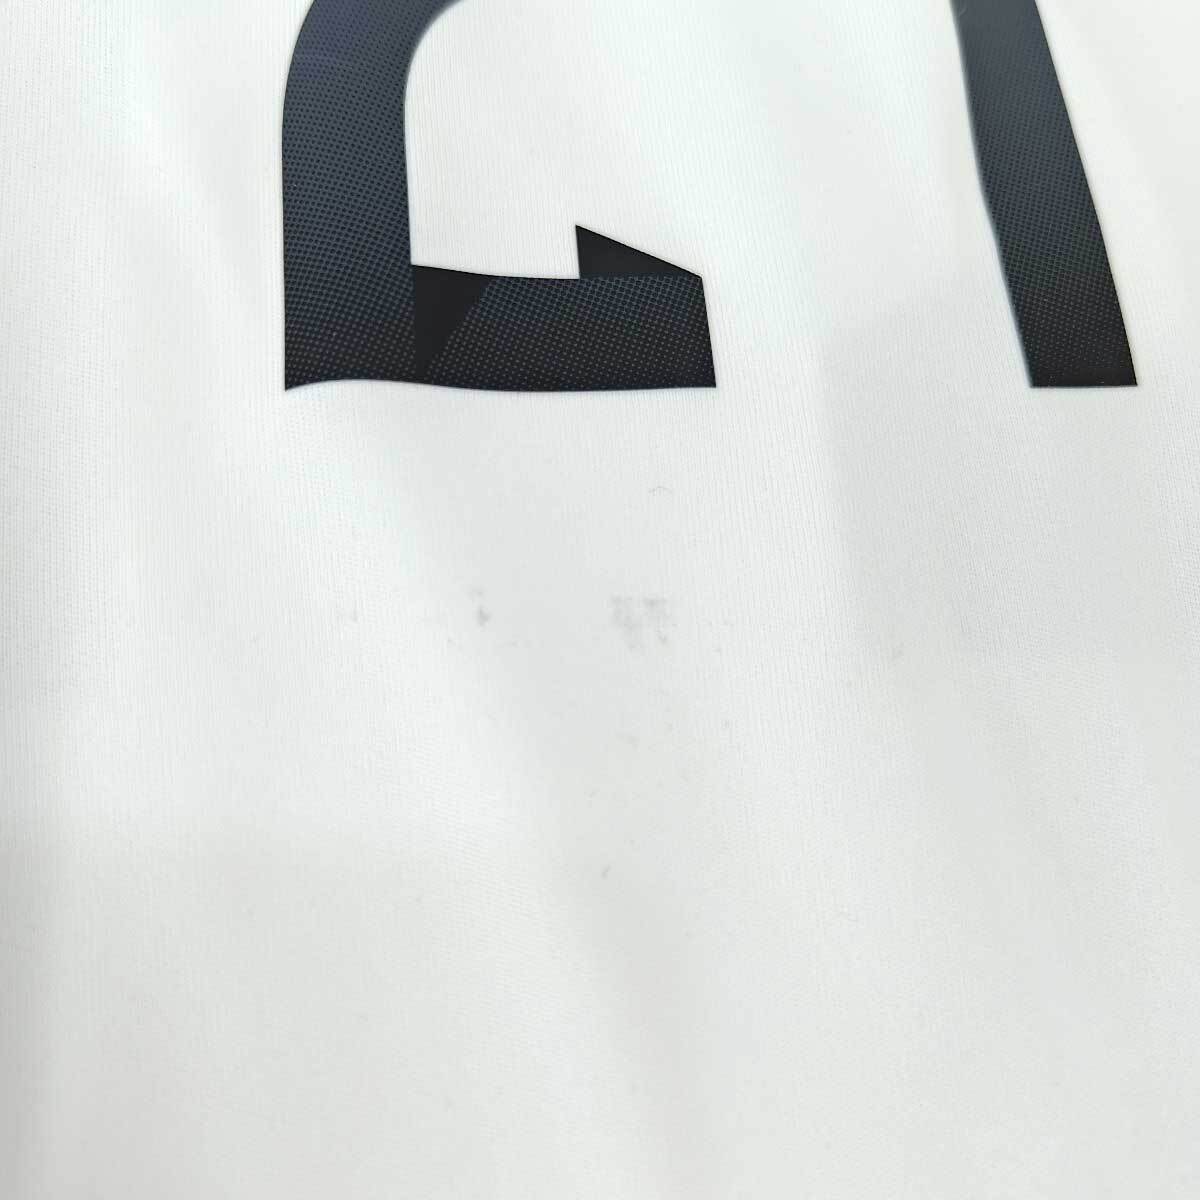 【中古】アディダス サッカー 2014 ブラジル大会 ドイツ代表 ホーム ユニフォーム #21 ロイス REUS S メンズ ADIDAS_画像7